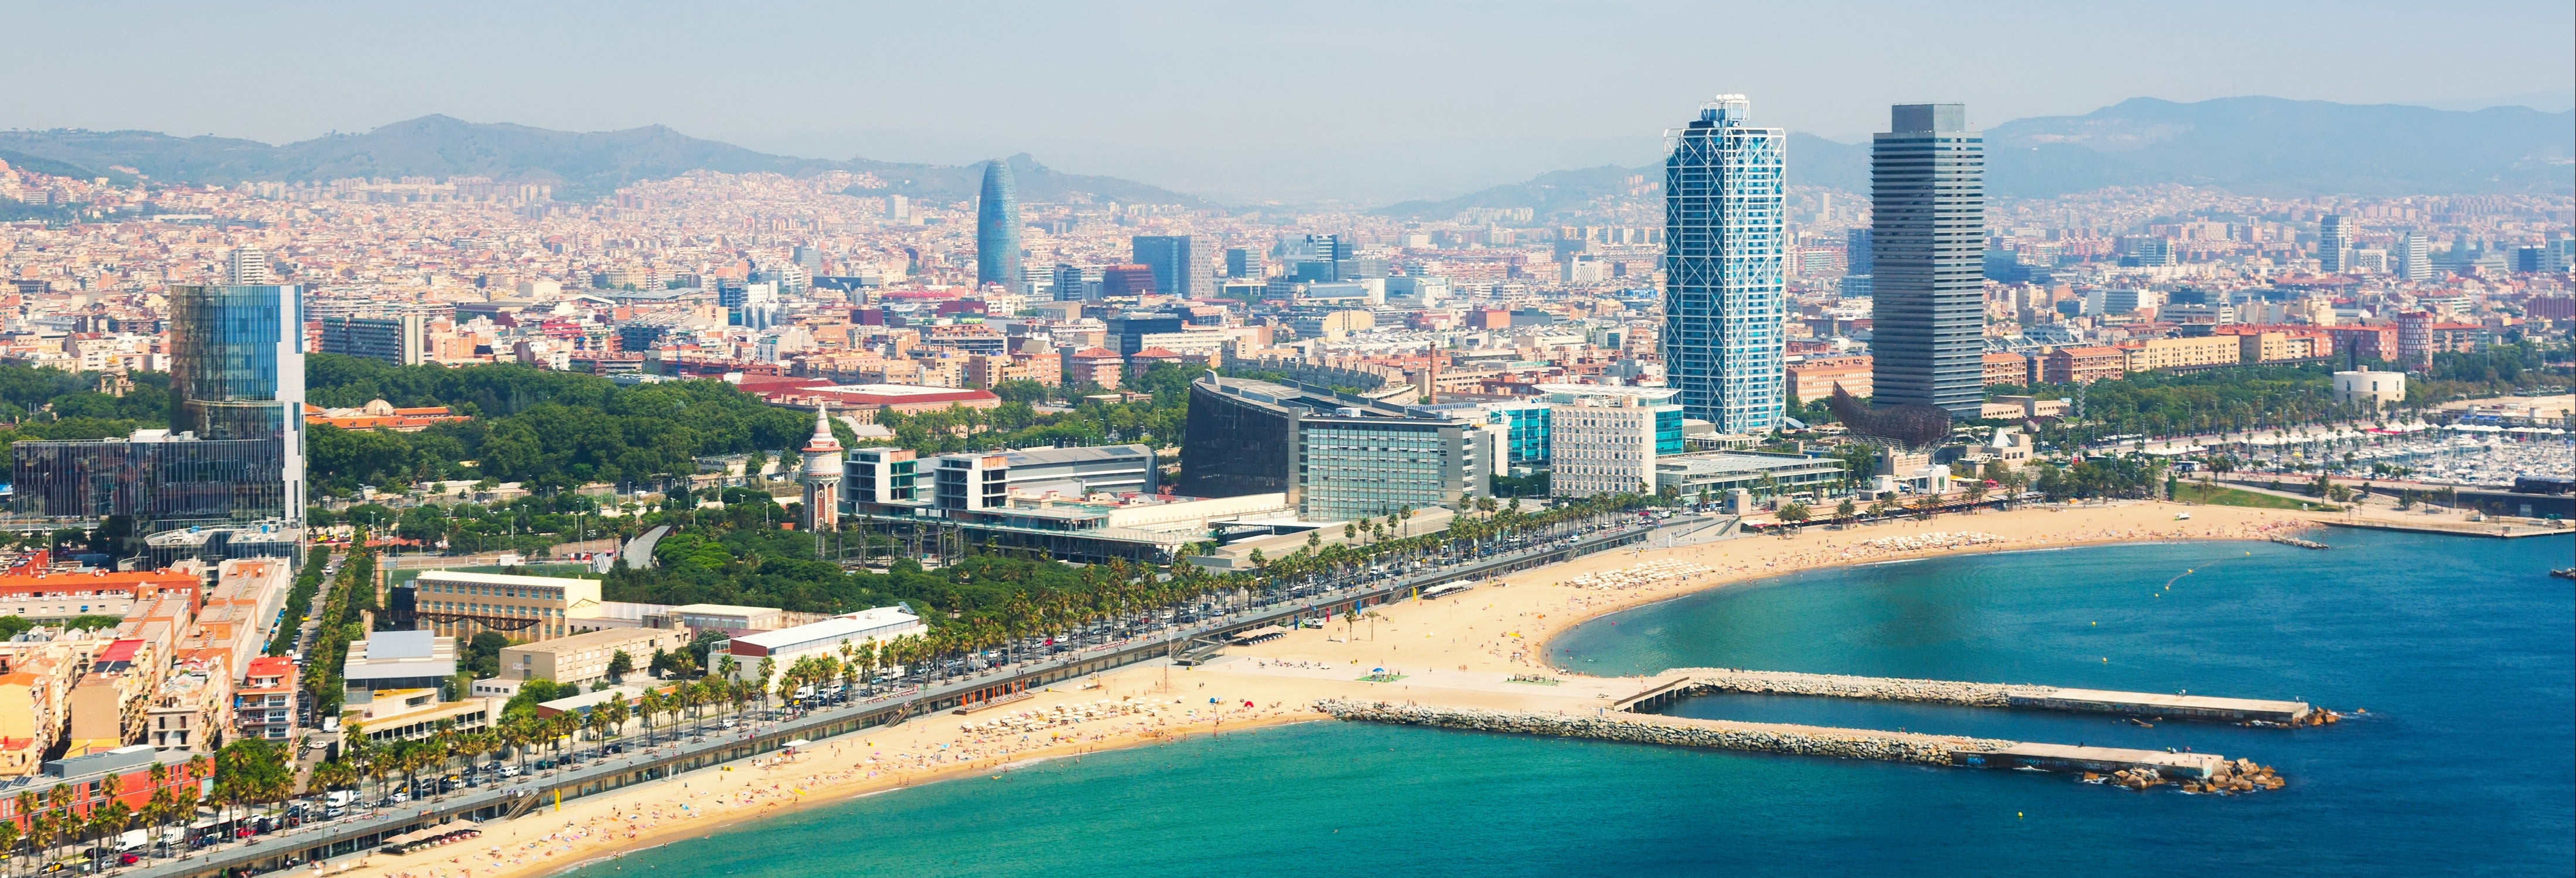 Barcelona por tierra, mar y aire